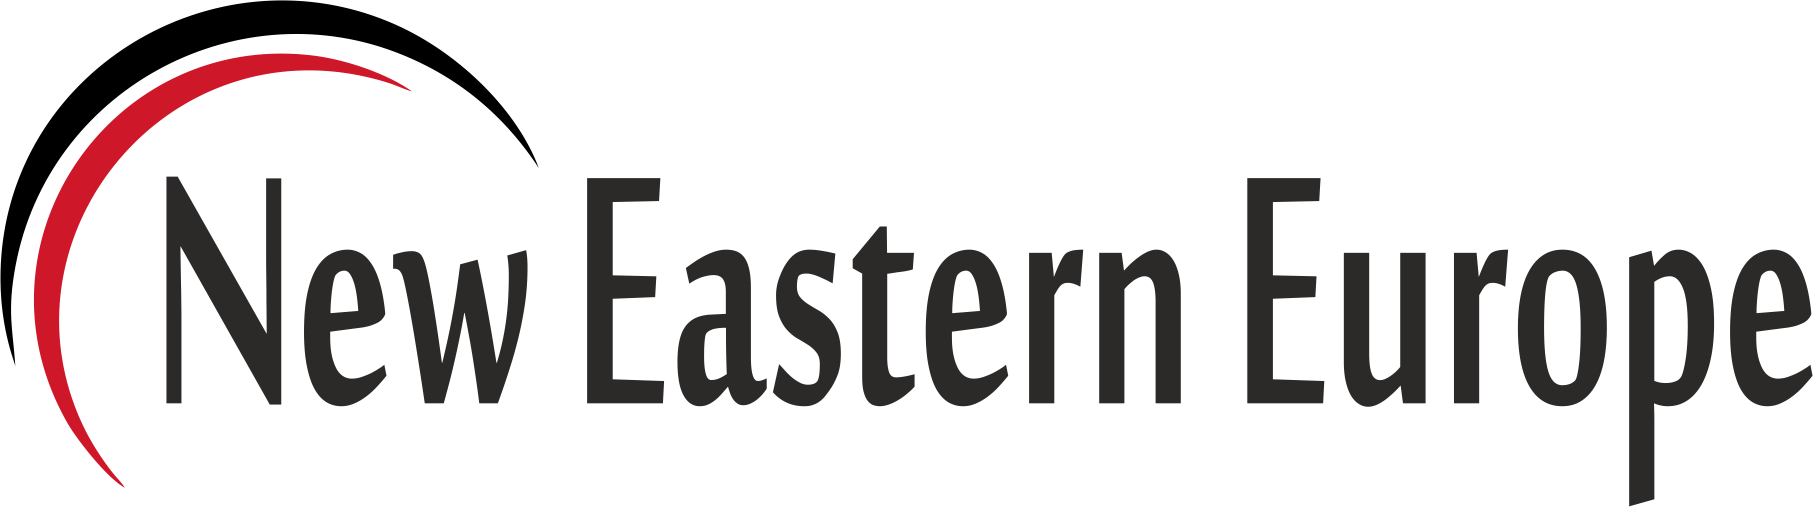 eastern